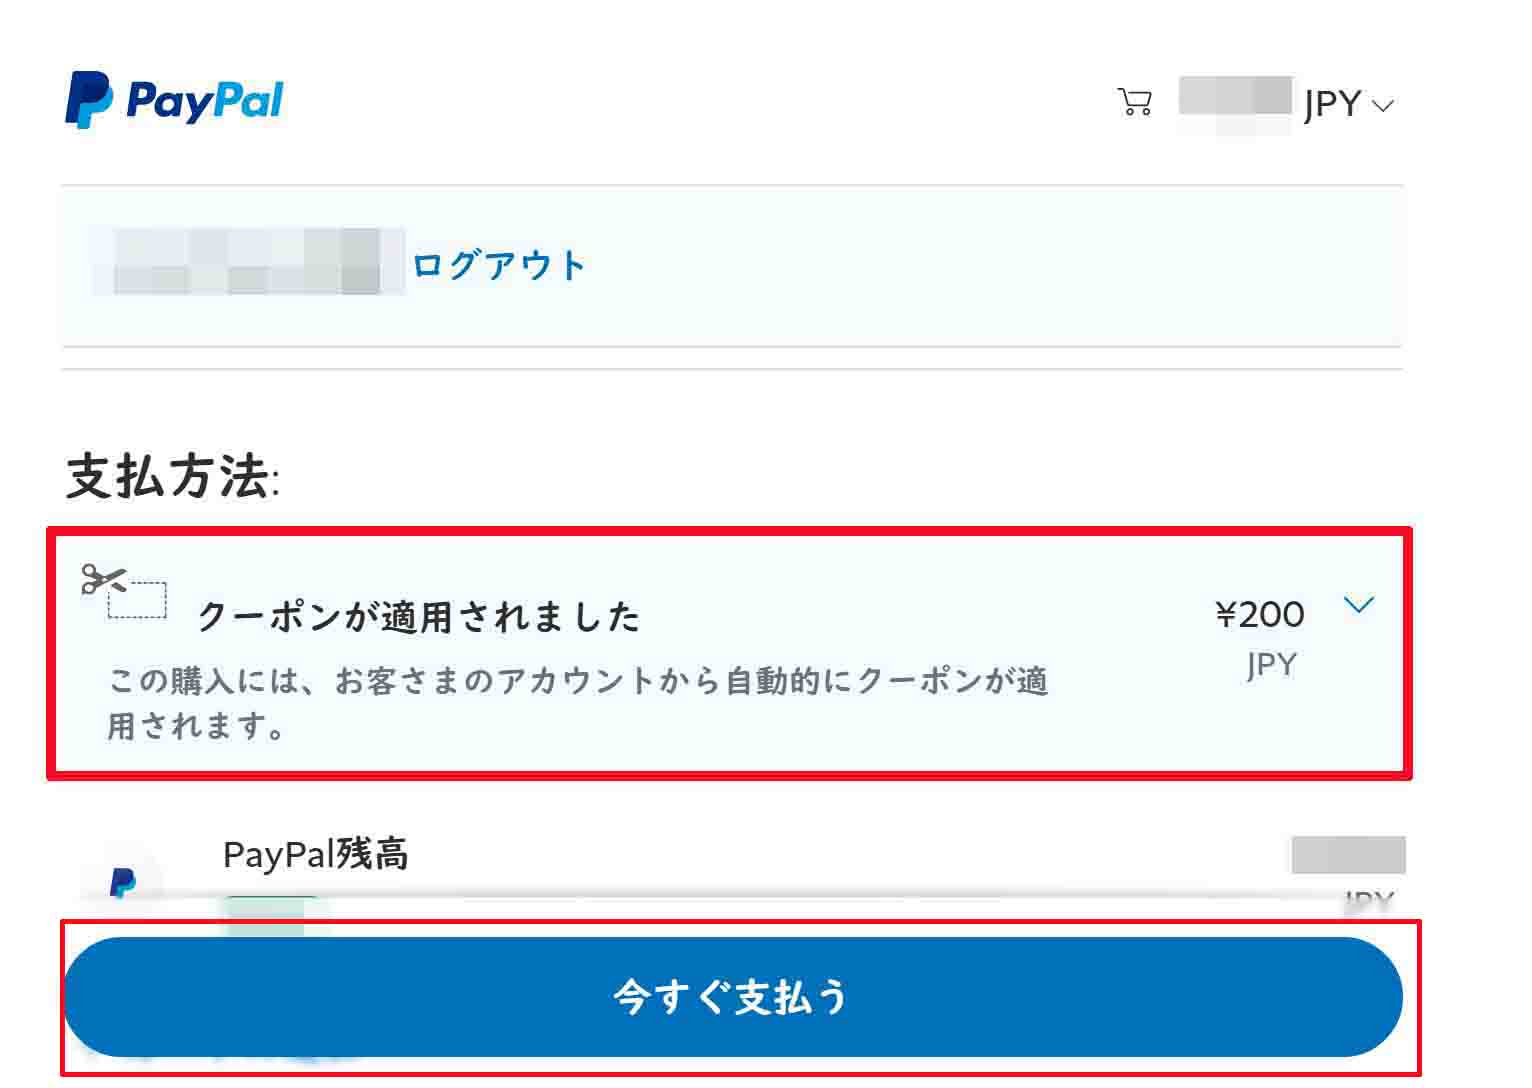 「PayPalで購入手続きに進む」をクリックしますと、このような支払い画面へと移行しますので、「今すぐ支払う」をクリックします。